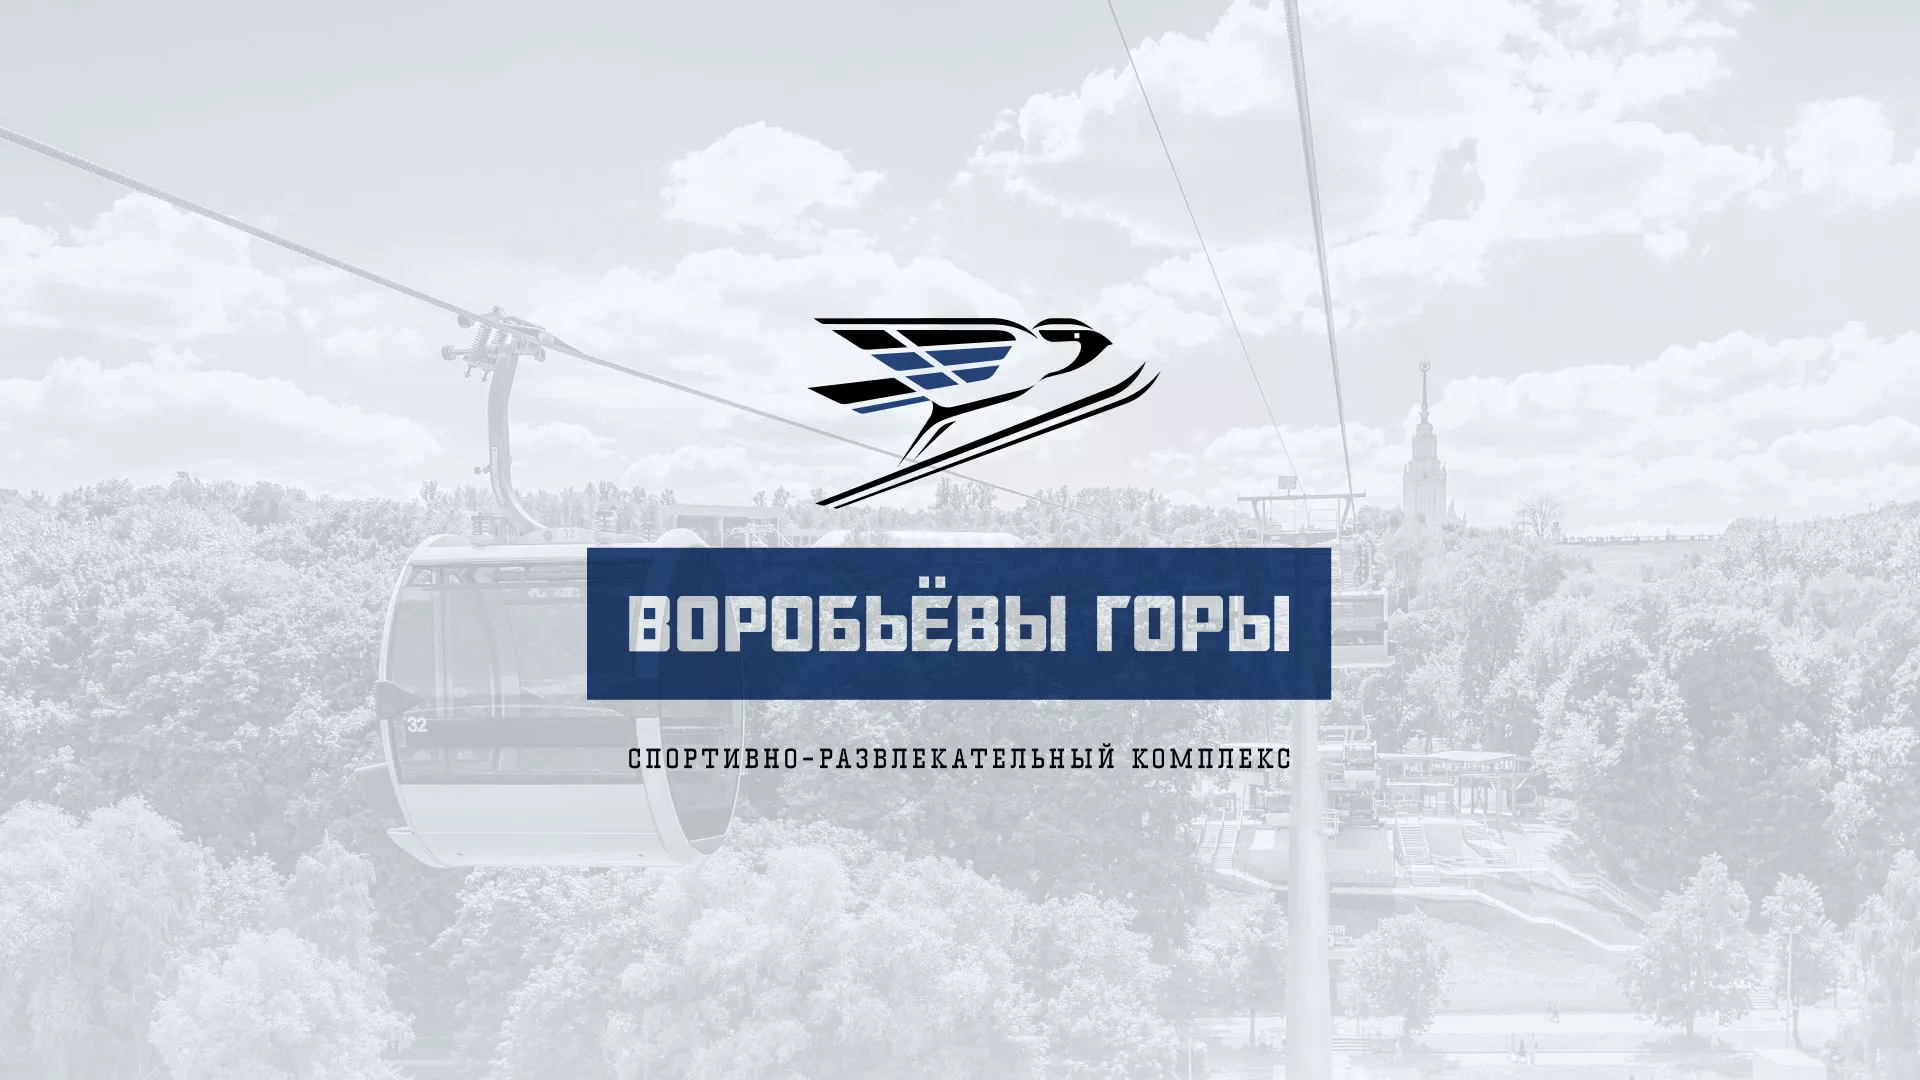 Разработка сайта в Одинцово для спортивно-развлекательного комплекса «Воробьёвы горы»